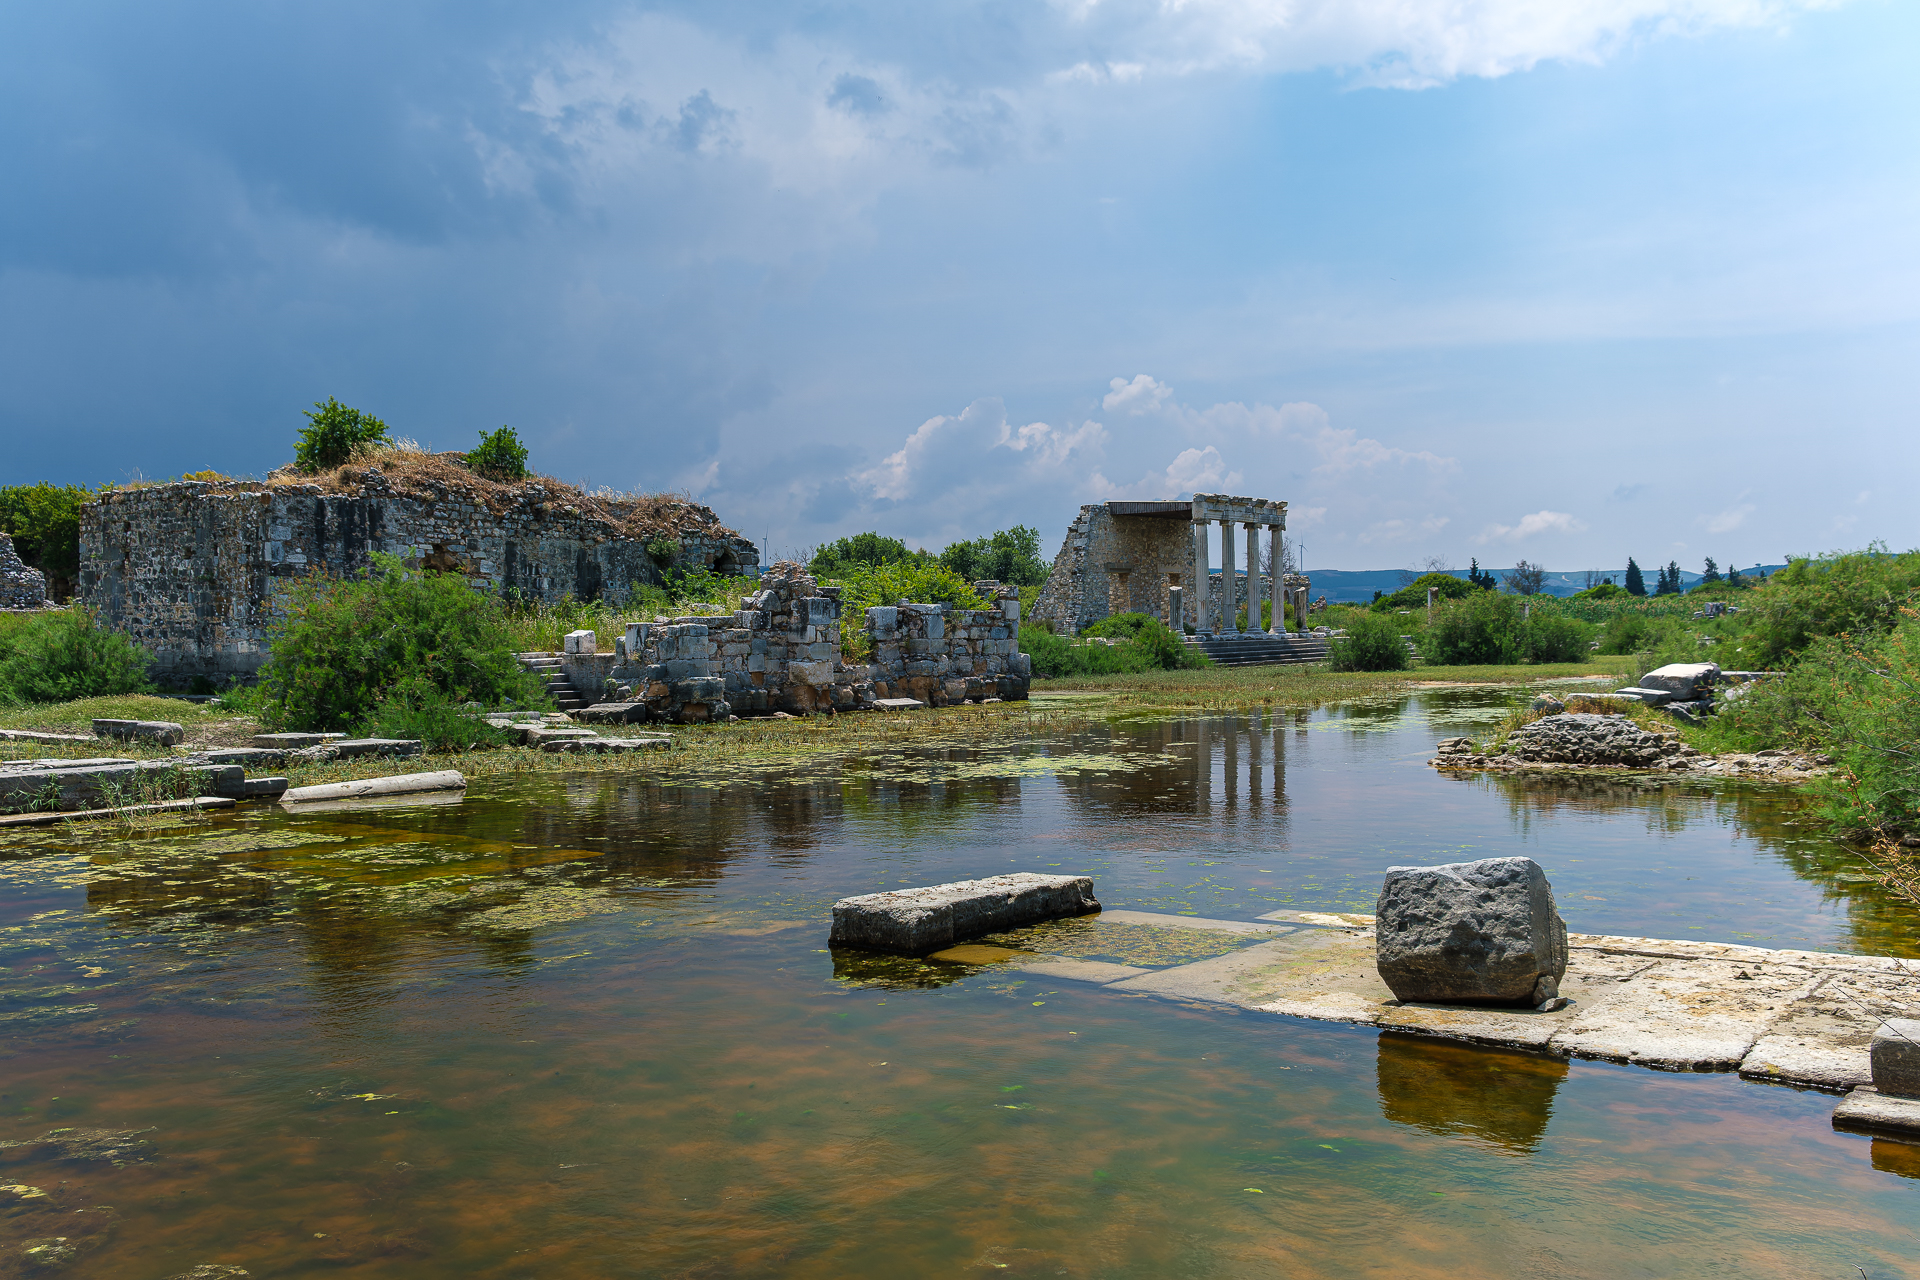 Milet: Eine Tempelanlage. Links im Bild sieht man gut das Gewitter das sich aufbaut. Rasch und heftig!